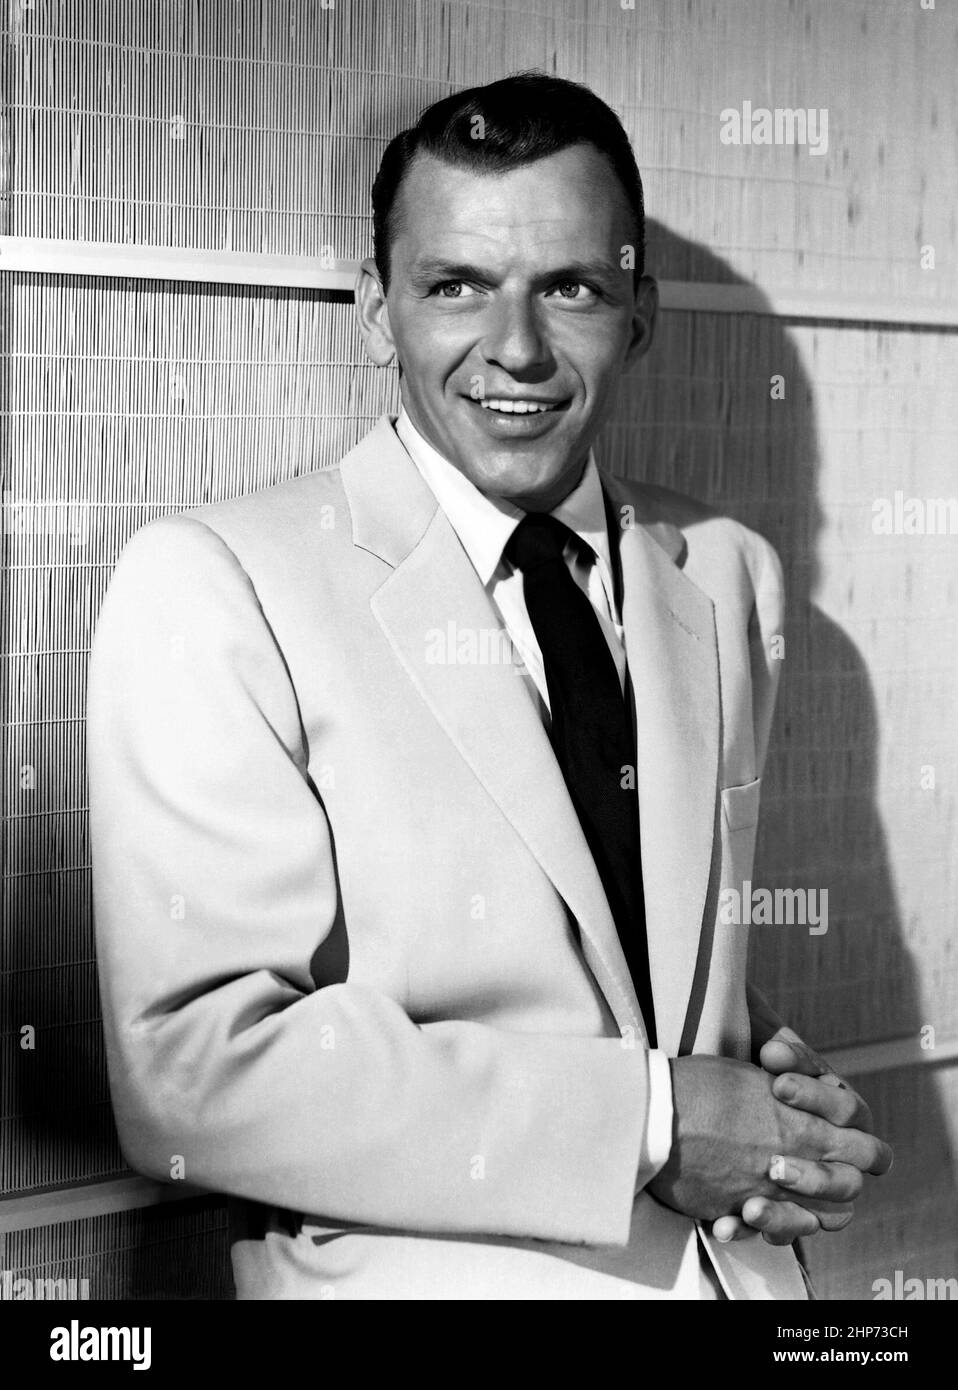 Retrato de Frank Sinatra en 1953. NBC Radio lanzó la foto publicitaria a la  prensa para promover su próximo drama de radio Rocky Fortune, protagonizada  por Sinatra en el papel del título